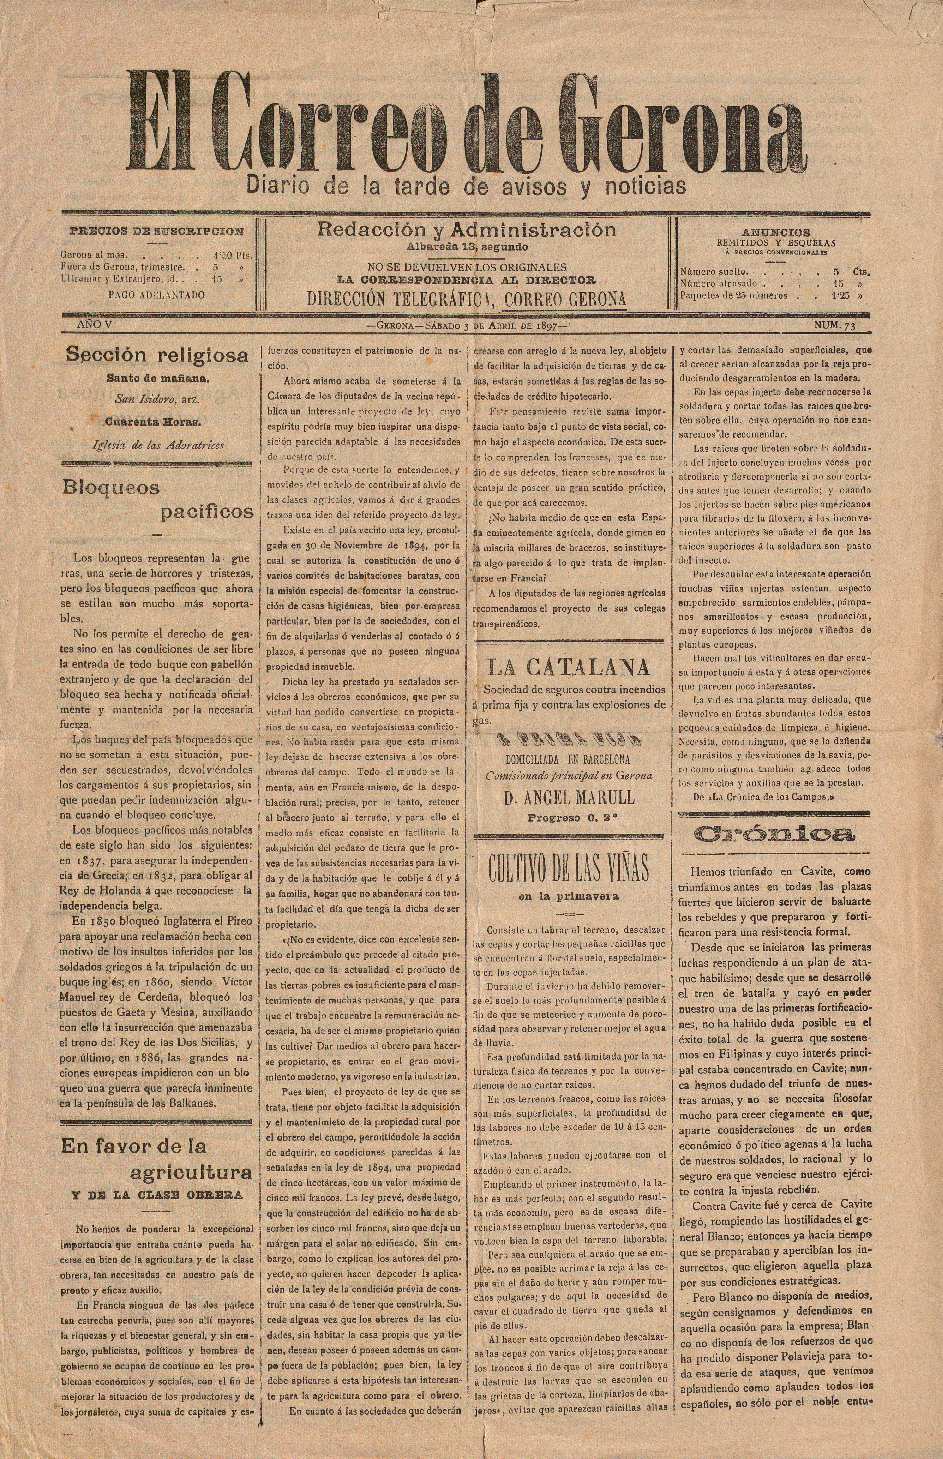 Correo de Gerona, El. 3/4/1897. [Issue]